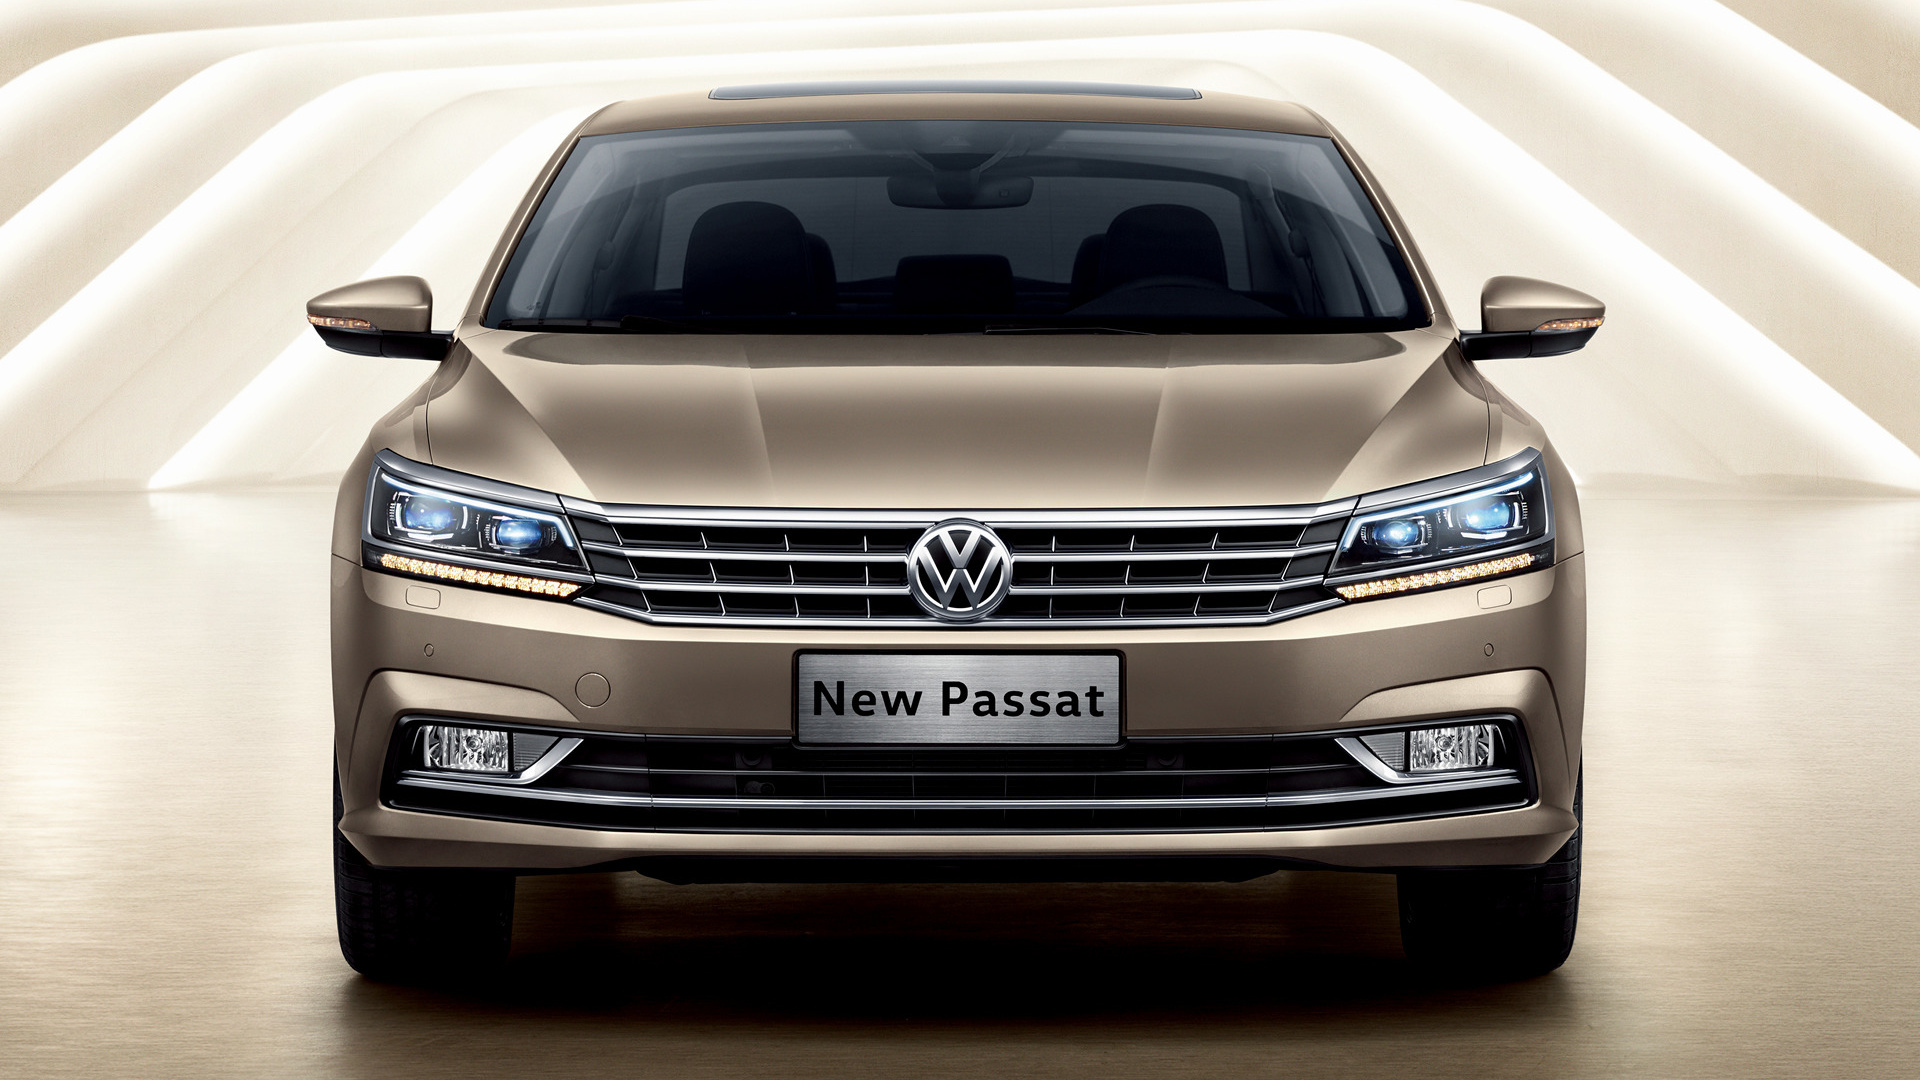 Volkswagen Passat, 2016 model, Car pixel, 1920x1080 Full HD Desktop